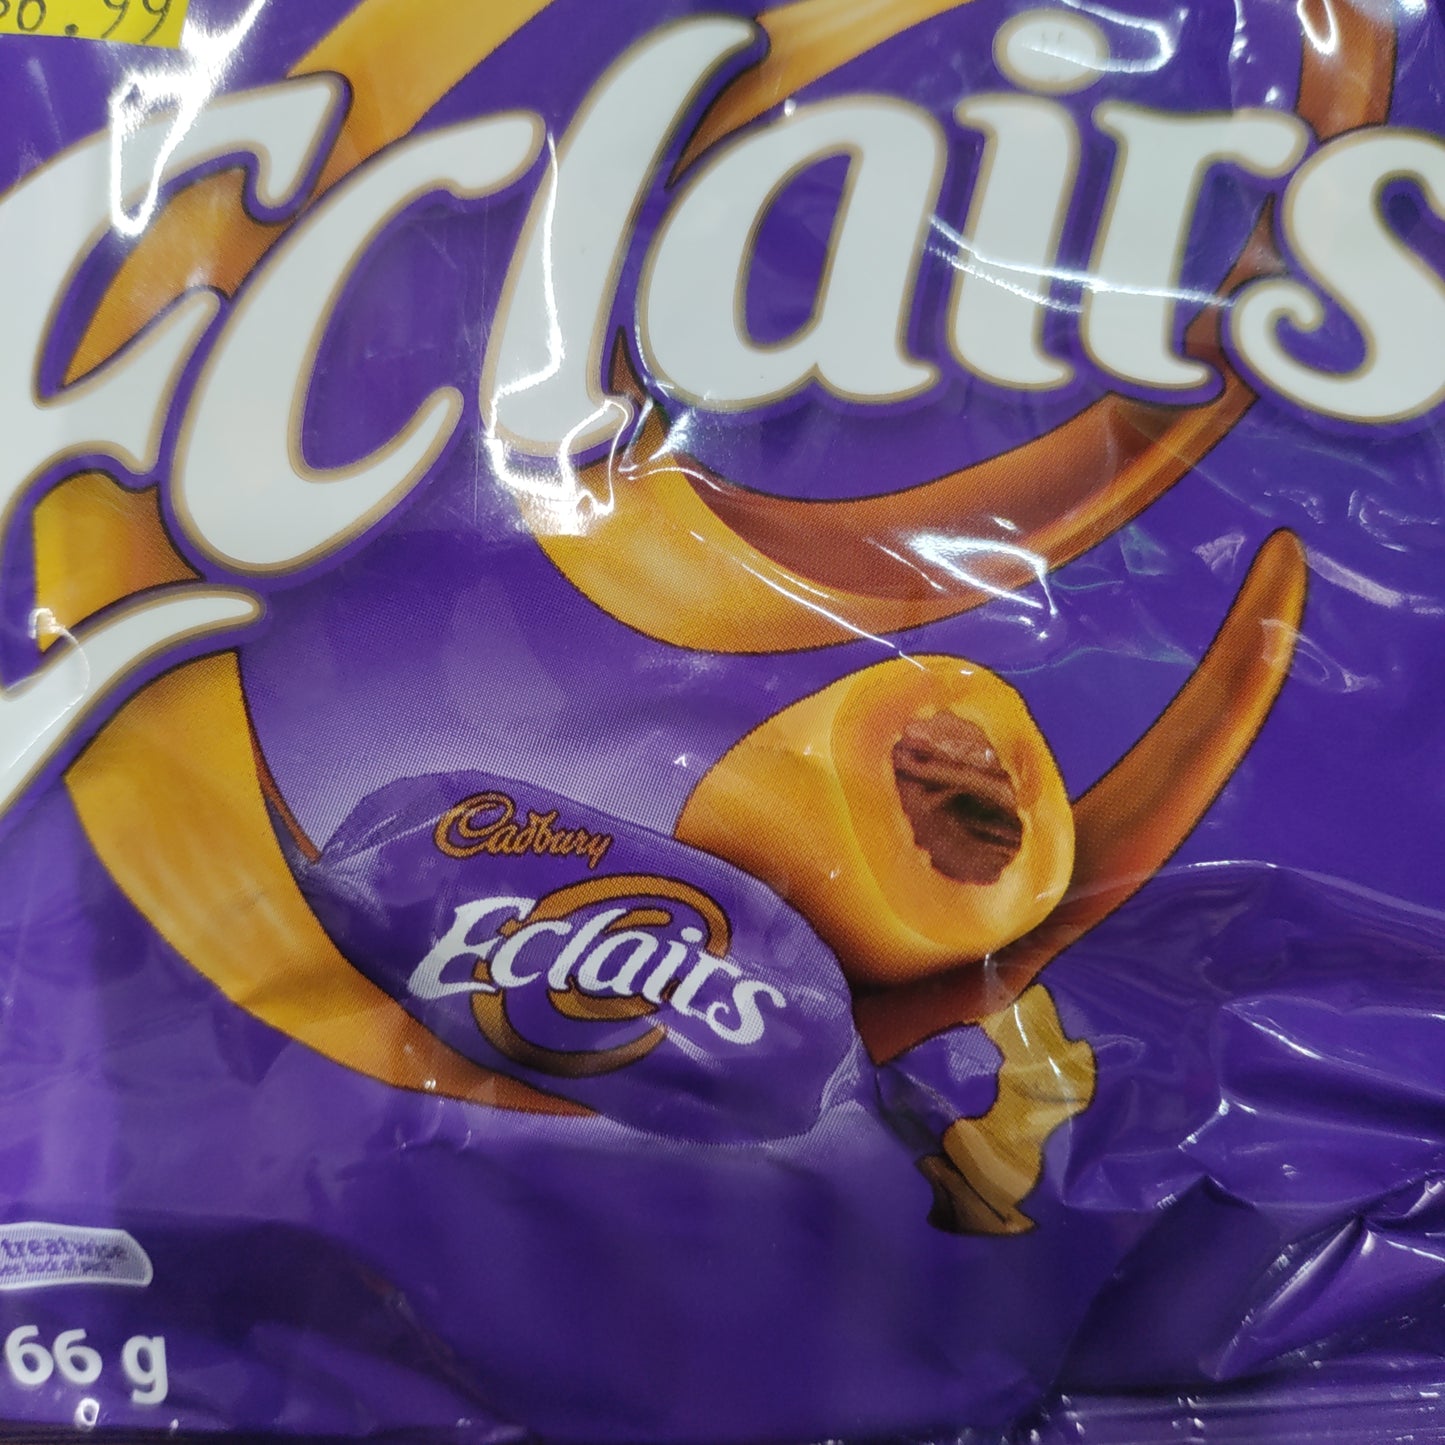 Cadbury eclairs